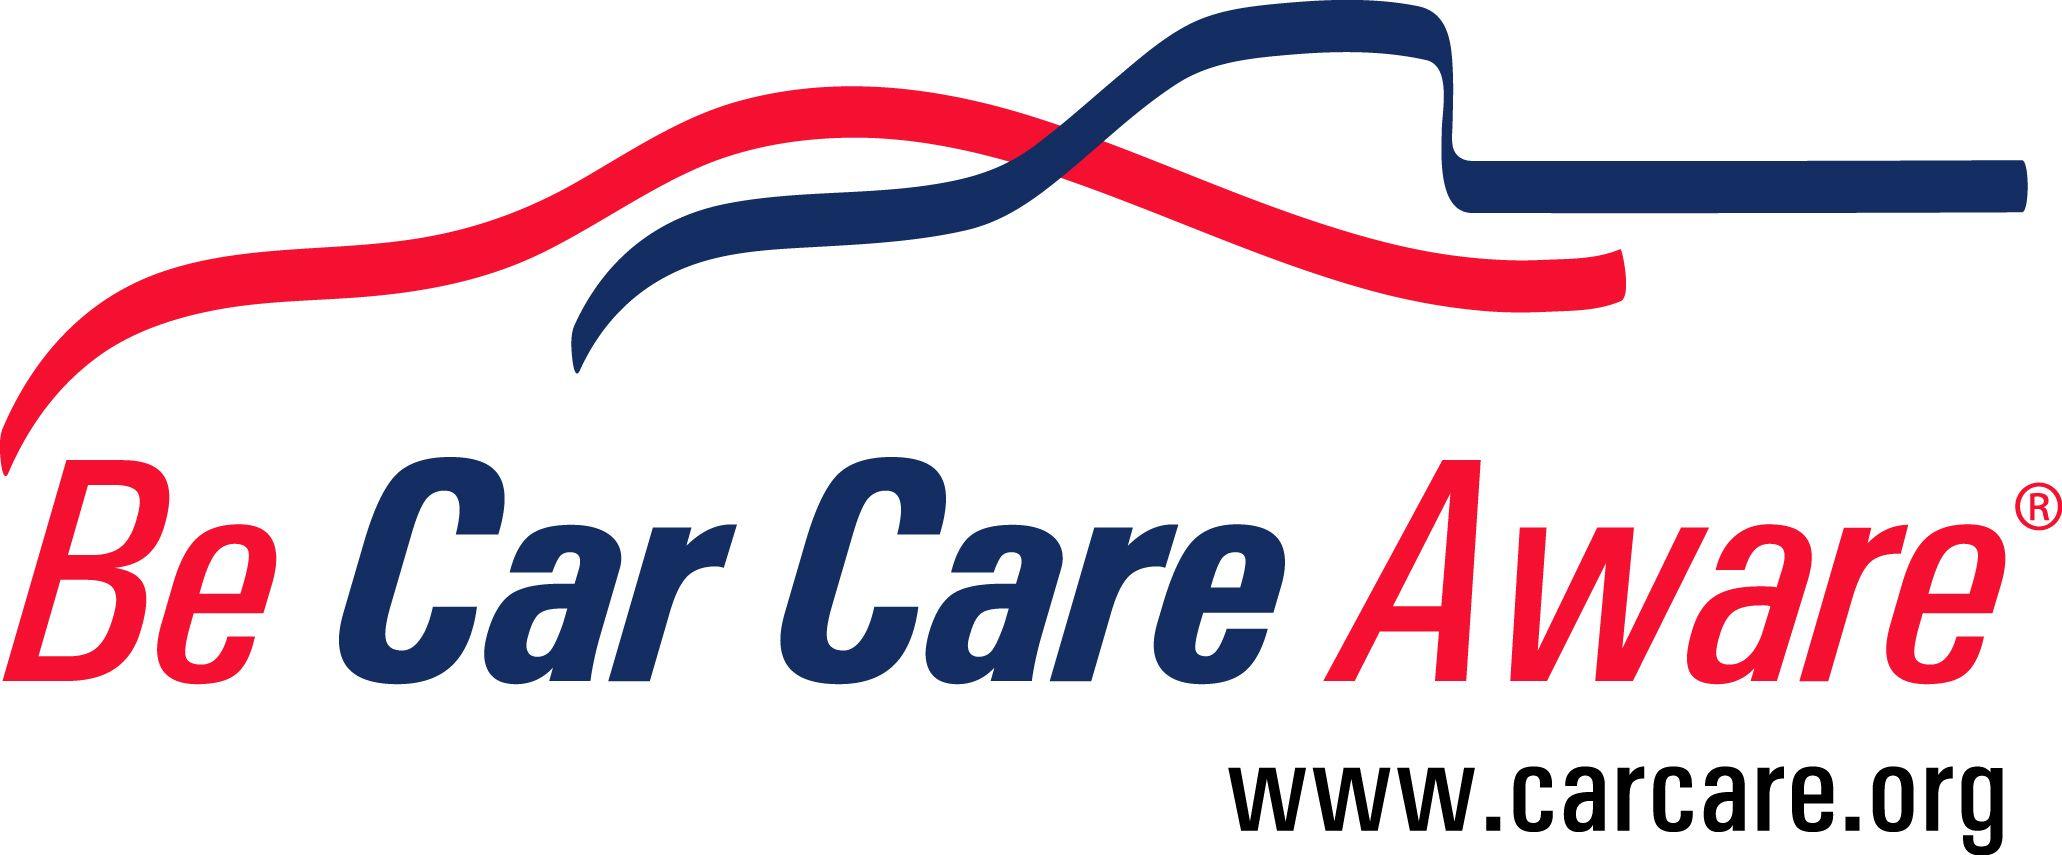 Auto Care Logo - Logos- Be Car Care Aware Logos